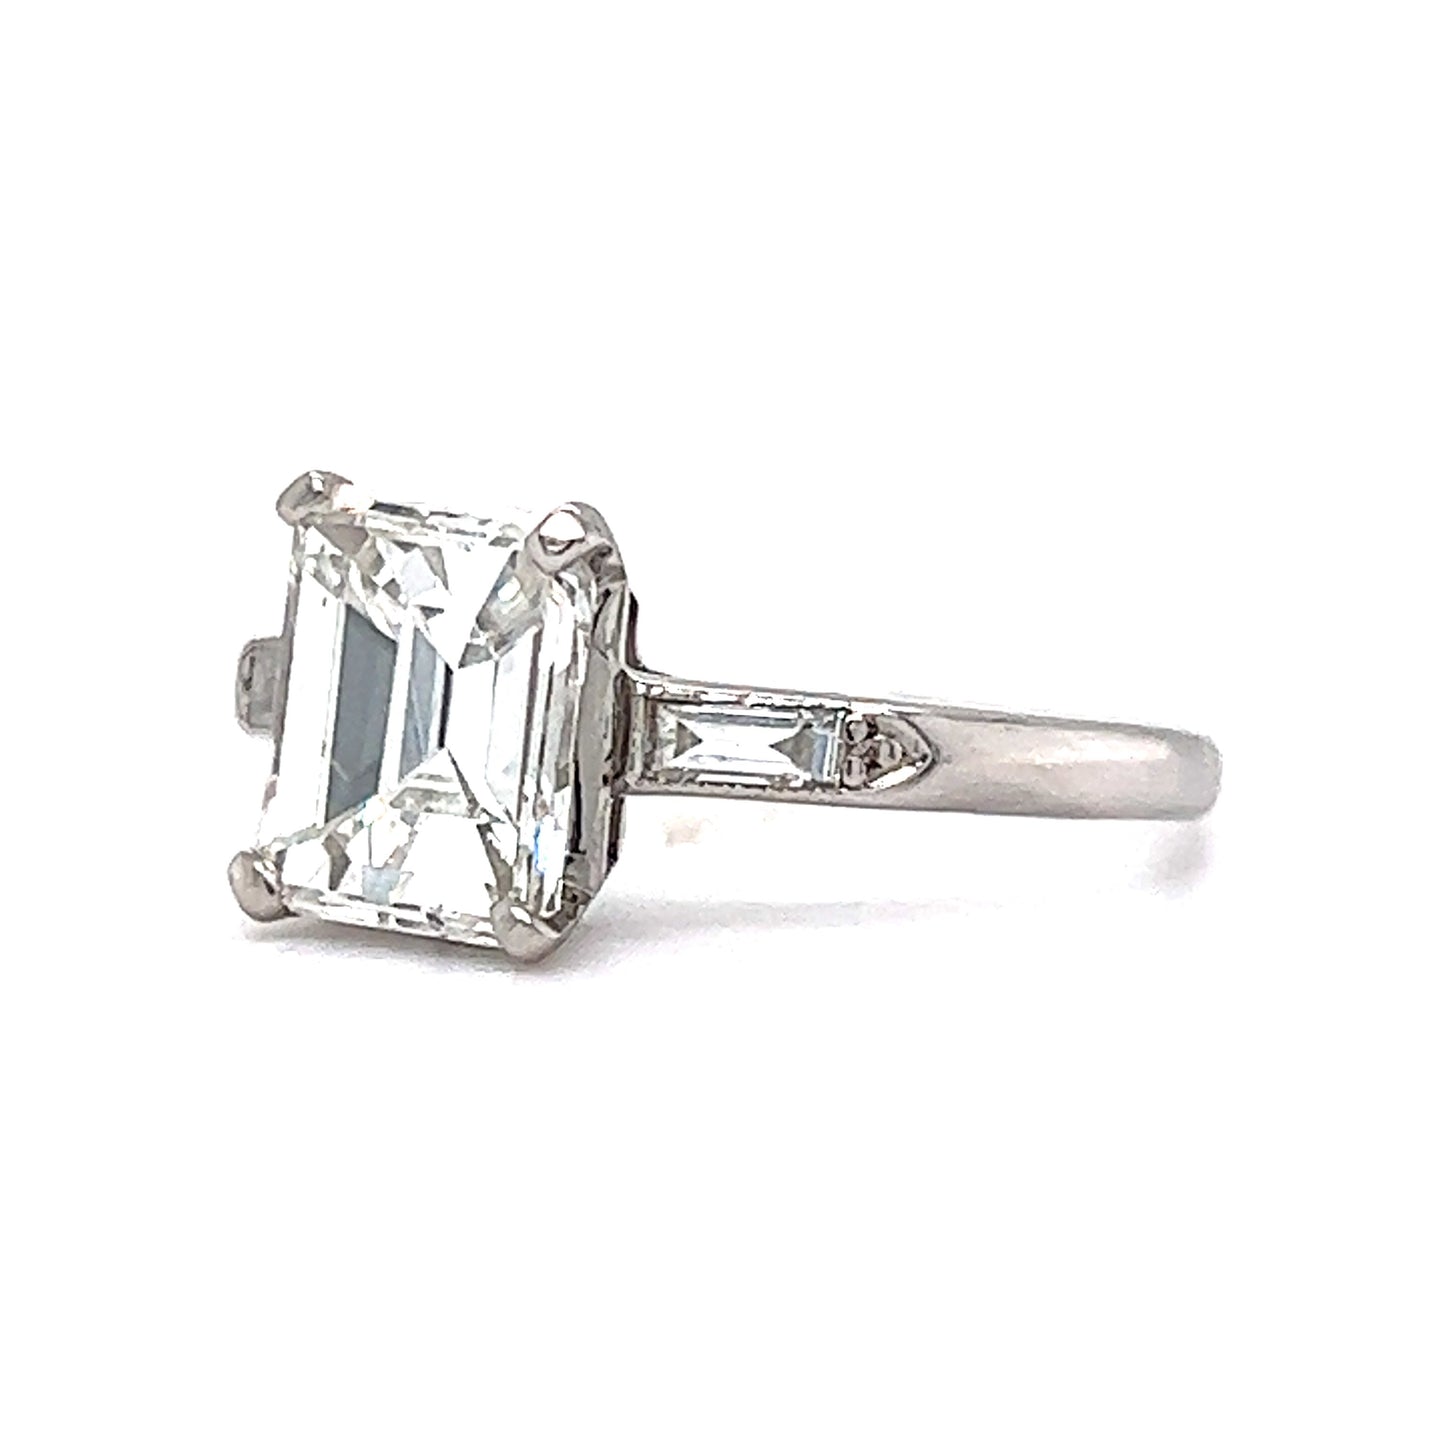 1.82 Emerald Cut Diamond Engagement Ring in Platinum